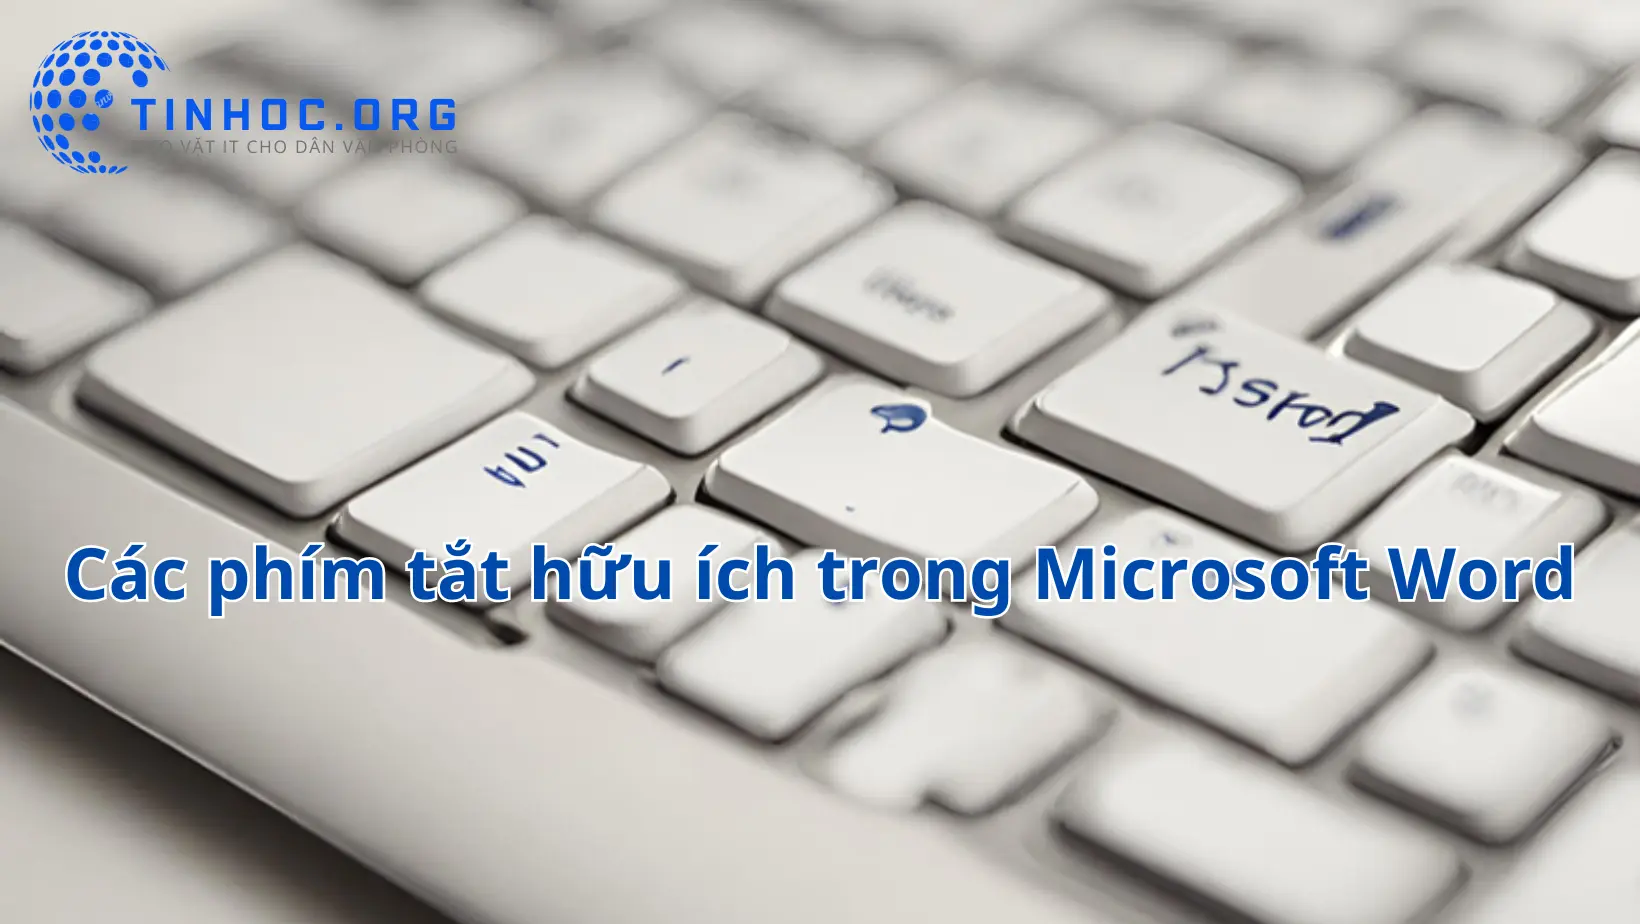 Microsoft Word là một công cụ văn bản mạnh mẽ, nhưng việc sử dụng phím tắt có thể giúp bạn làm việc hiệu quả hơn.